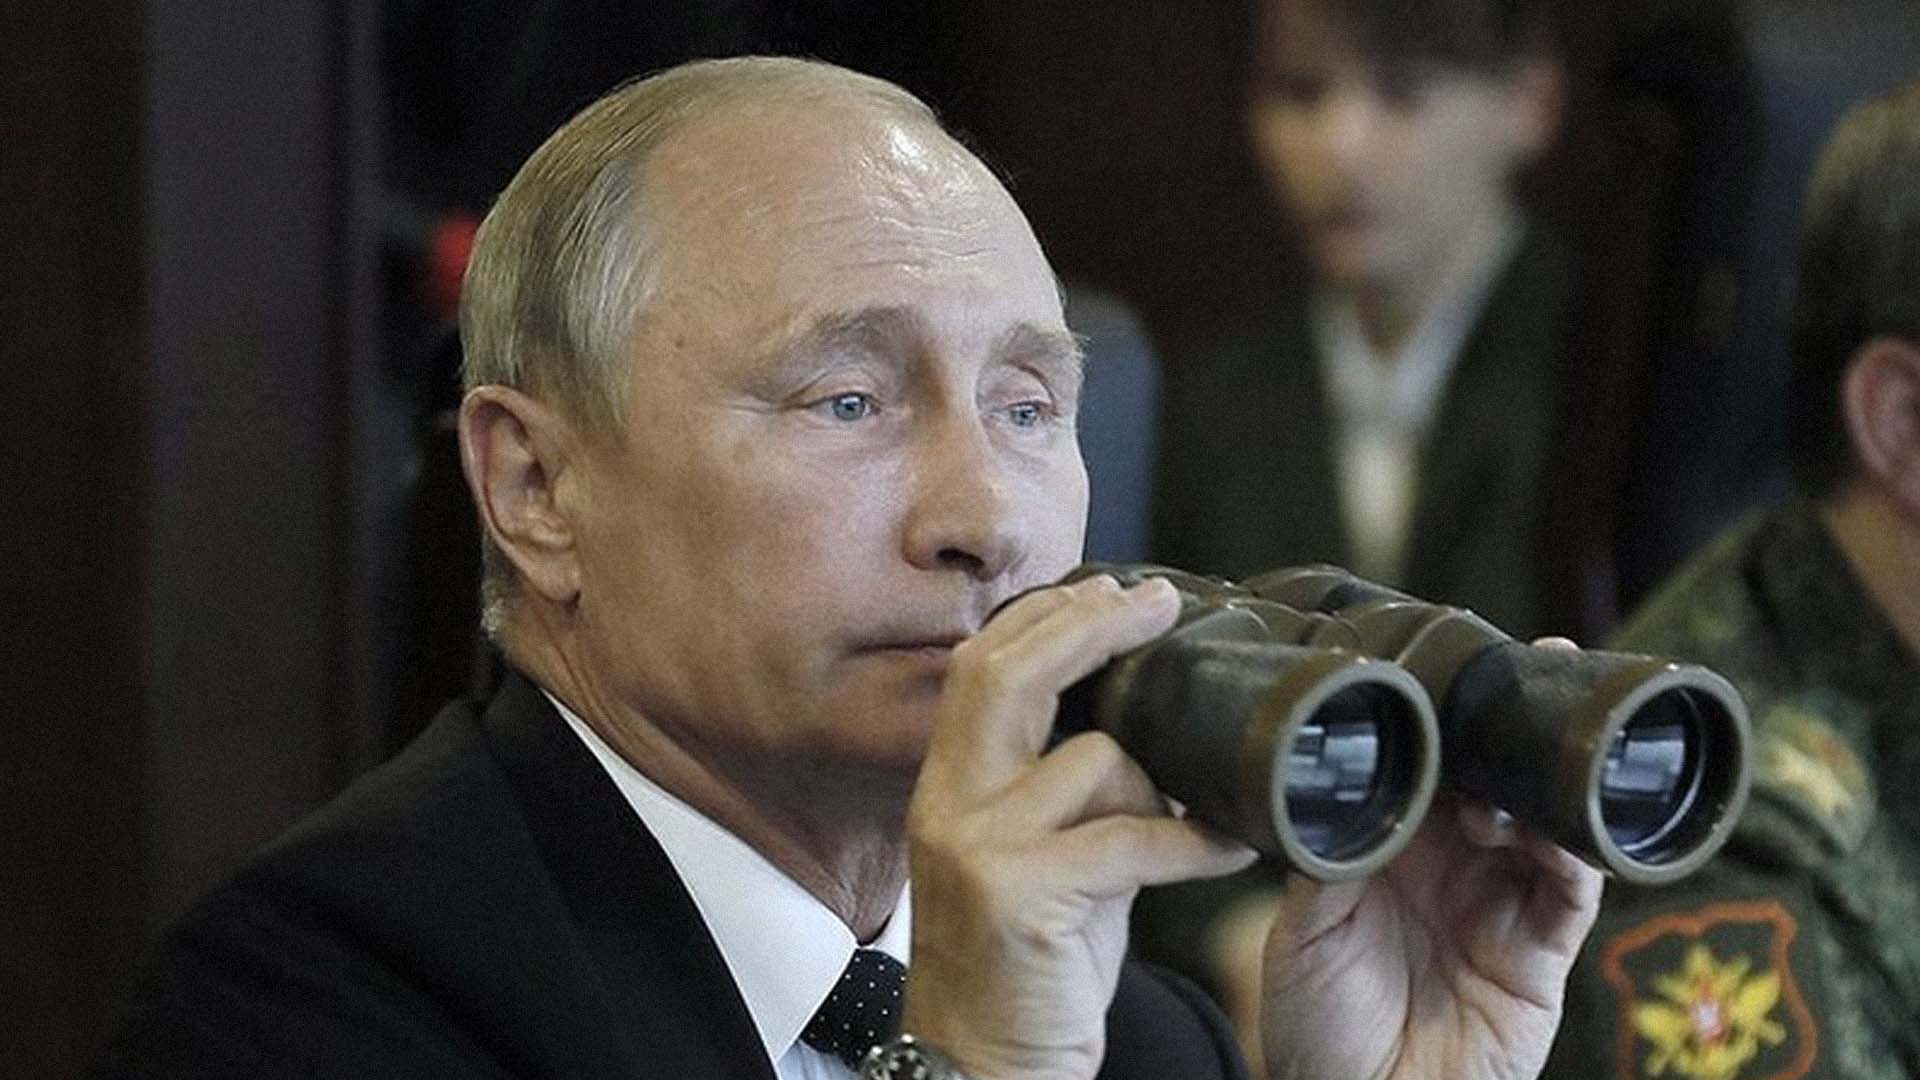 صورة أميركا تفرض عقوبات قاسية على روسيا ليشاهد بوتين معاناة شعبه ويتّعظ